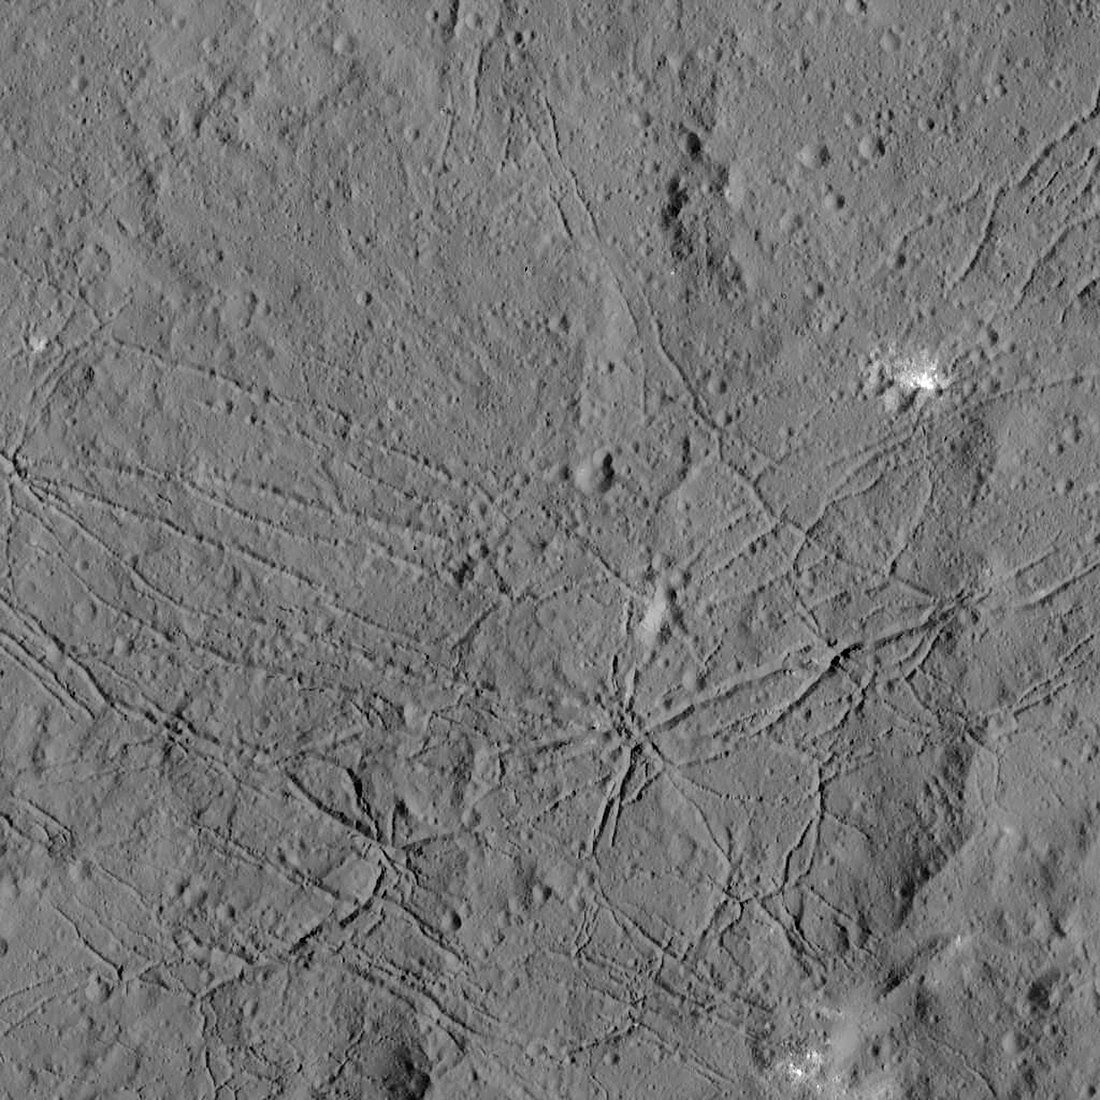 Dantu Crater, Ceres, satellite image